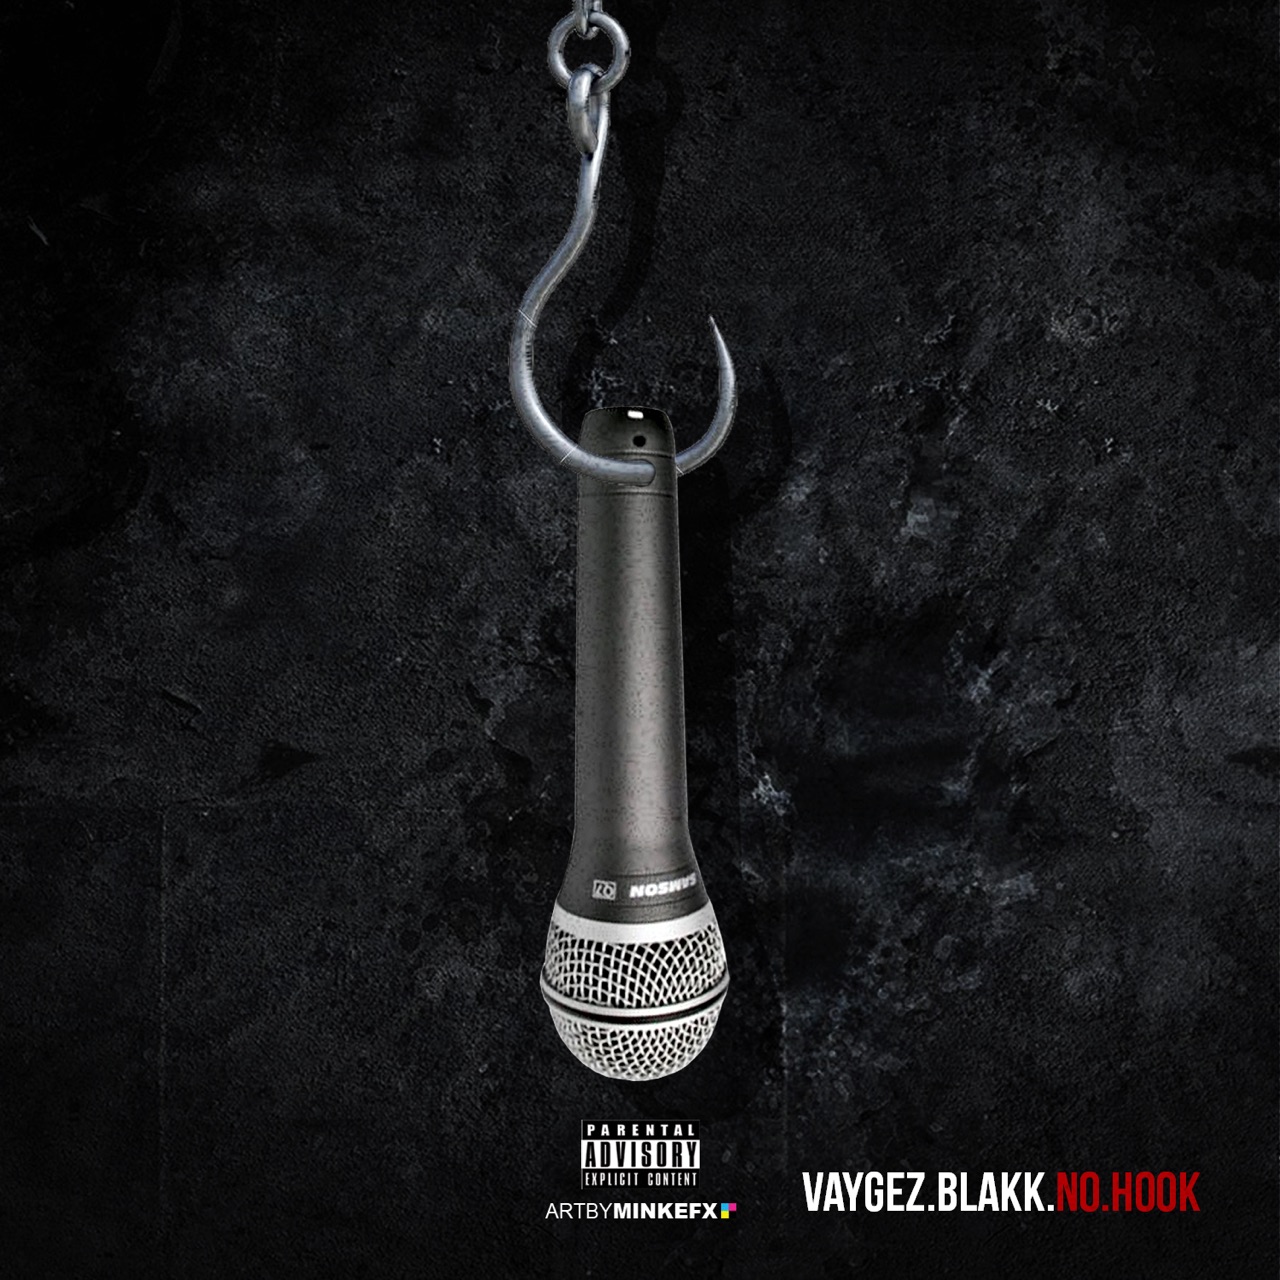 New Music: Vaygez Blakk “No Hook” Freestyle @VBlakk